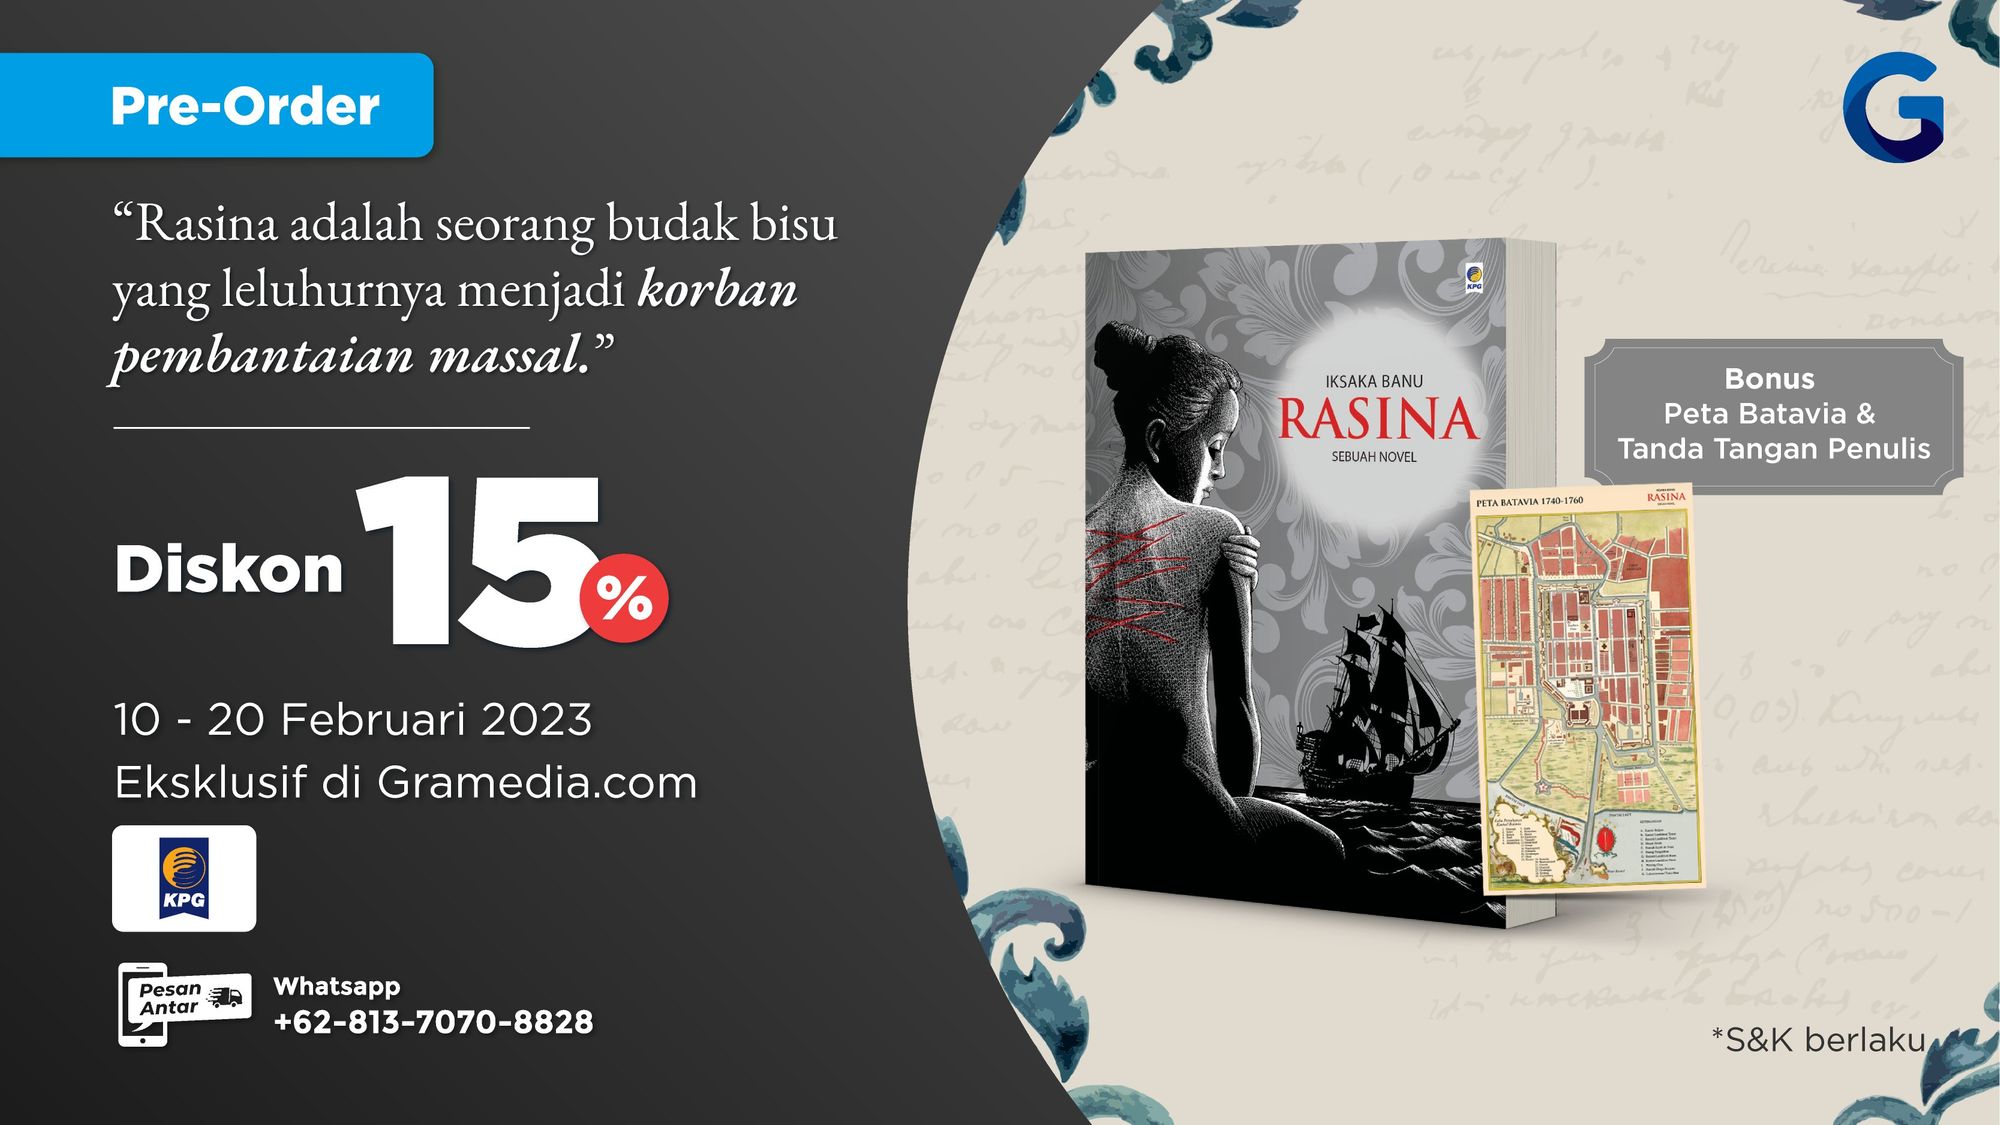 Rasina, Novel Baru Iksaka Banu Akhirnya Terbit di Gramedia!